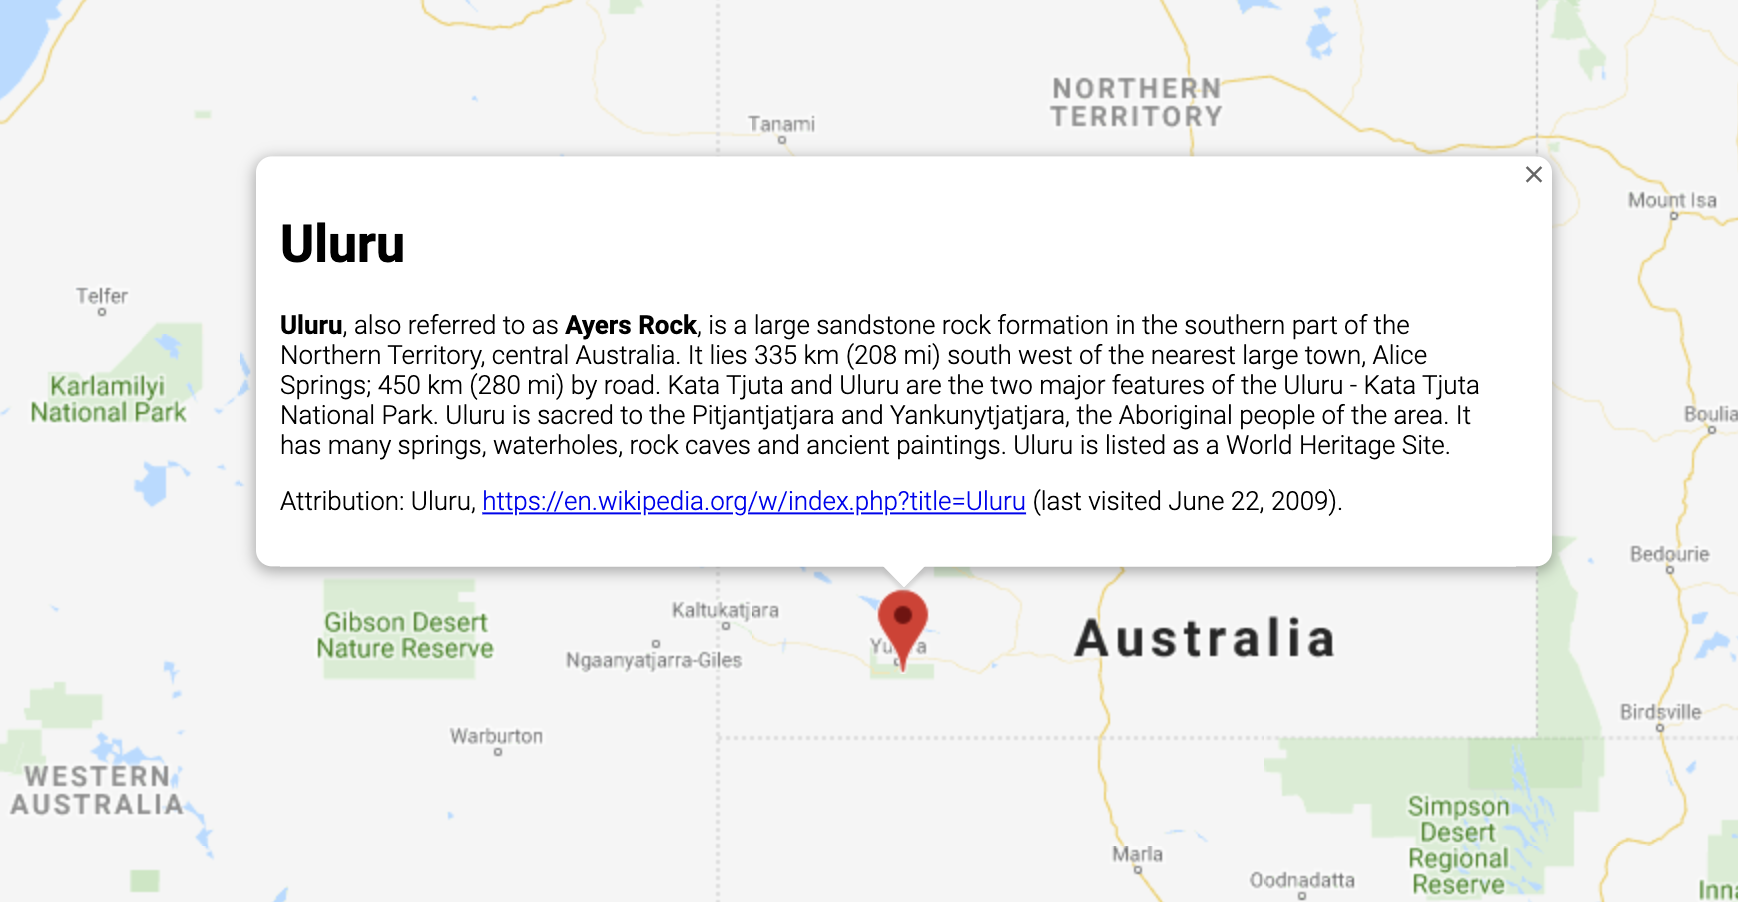 InfoWindow menampilkan informasi mengenai sebuah lokasi di Australia.